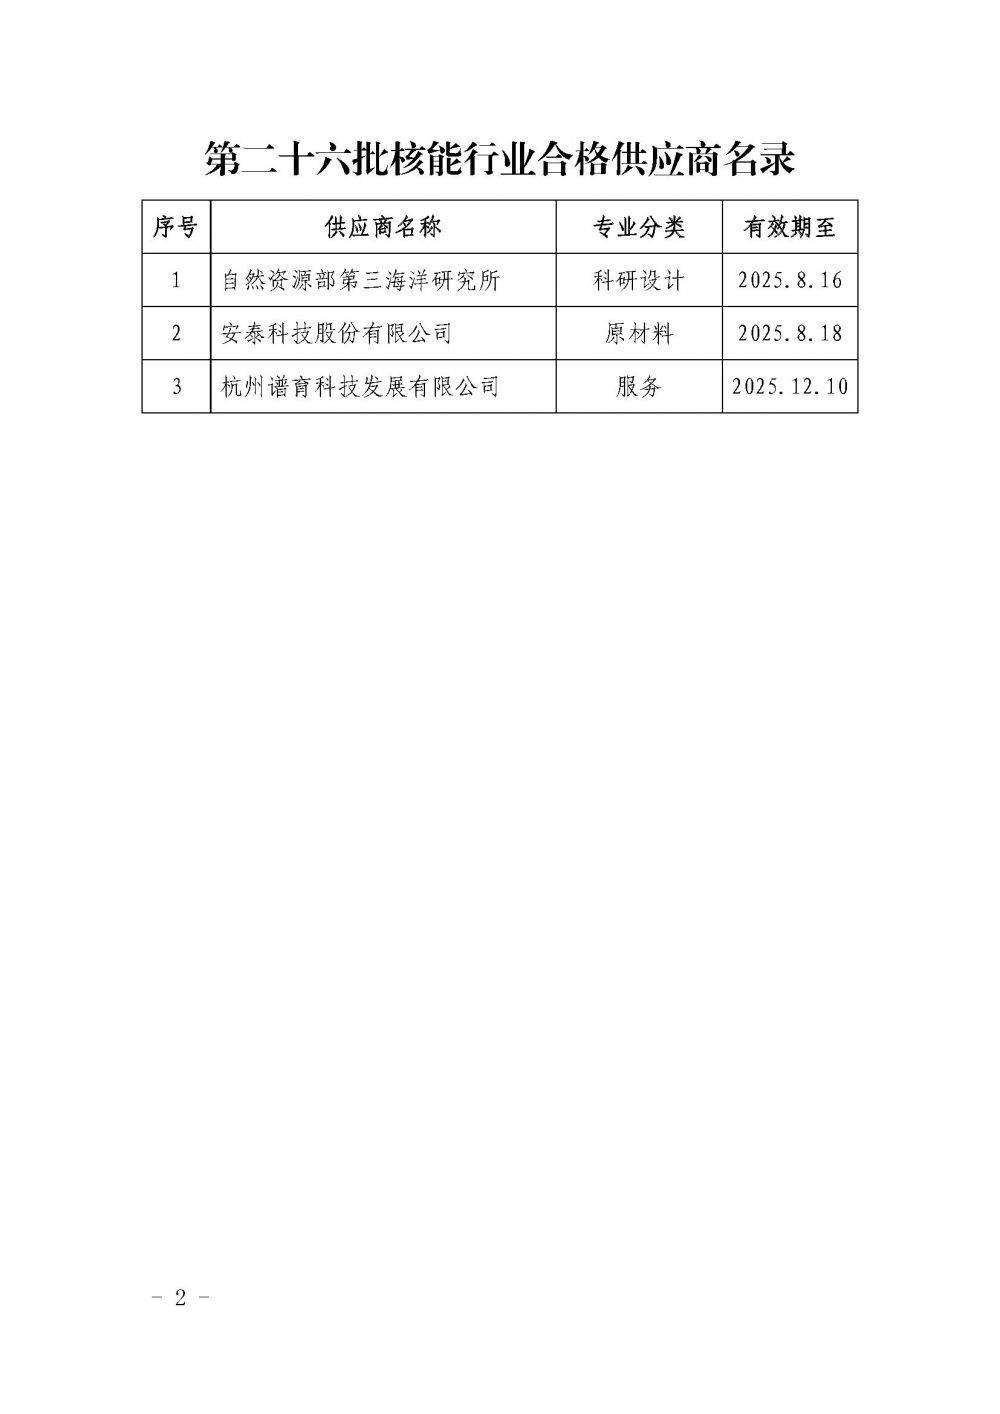 中国核能行业协会关于发布第二十六批核能行业合格供应商名录的公告_页面_2.jpg